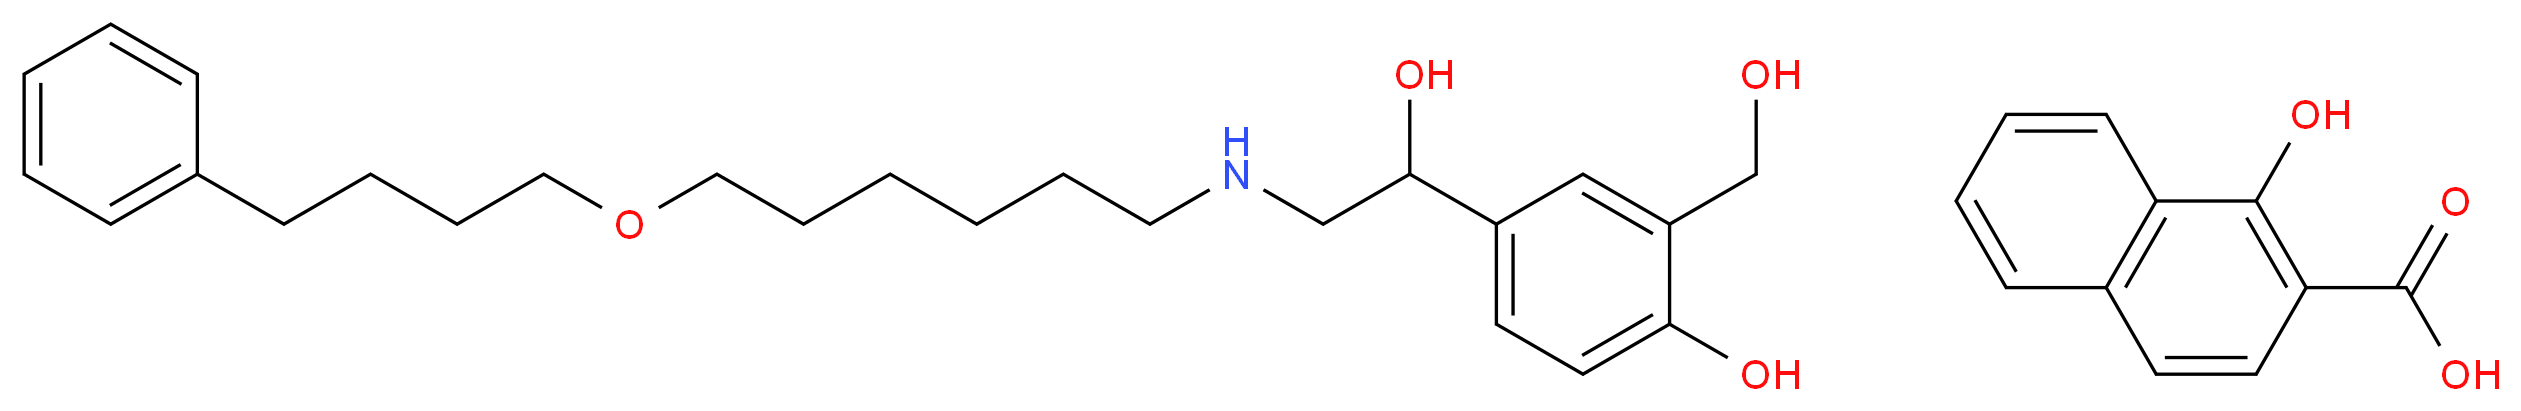 4-(1-Hydroxy-2-((6-(4-phenylbutoxy)hexyl)amino)ethyl)-2-(hydroxymethyl)phenol 1-hydroxy-2-naphthoate_Molecular_structure_CAS_94749-08-3)